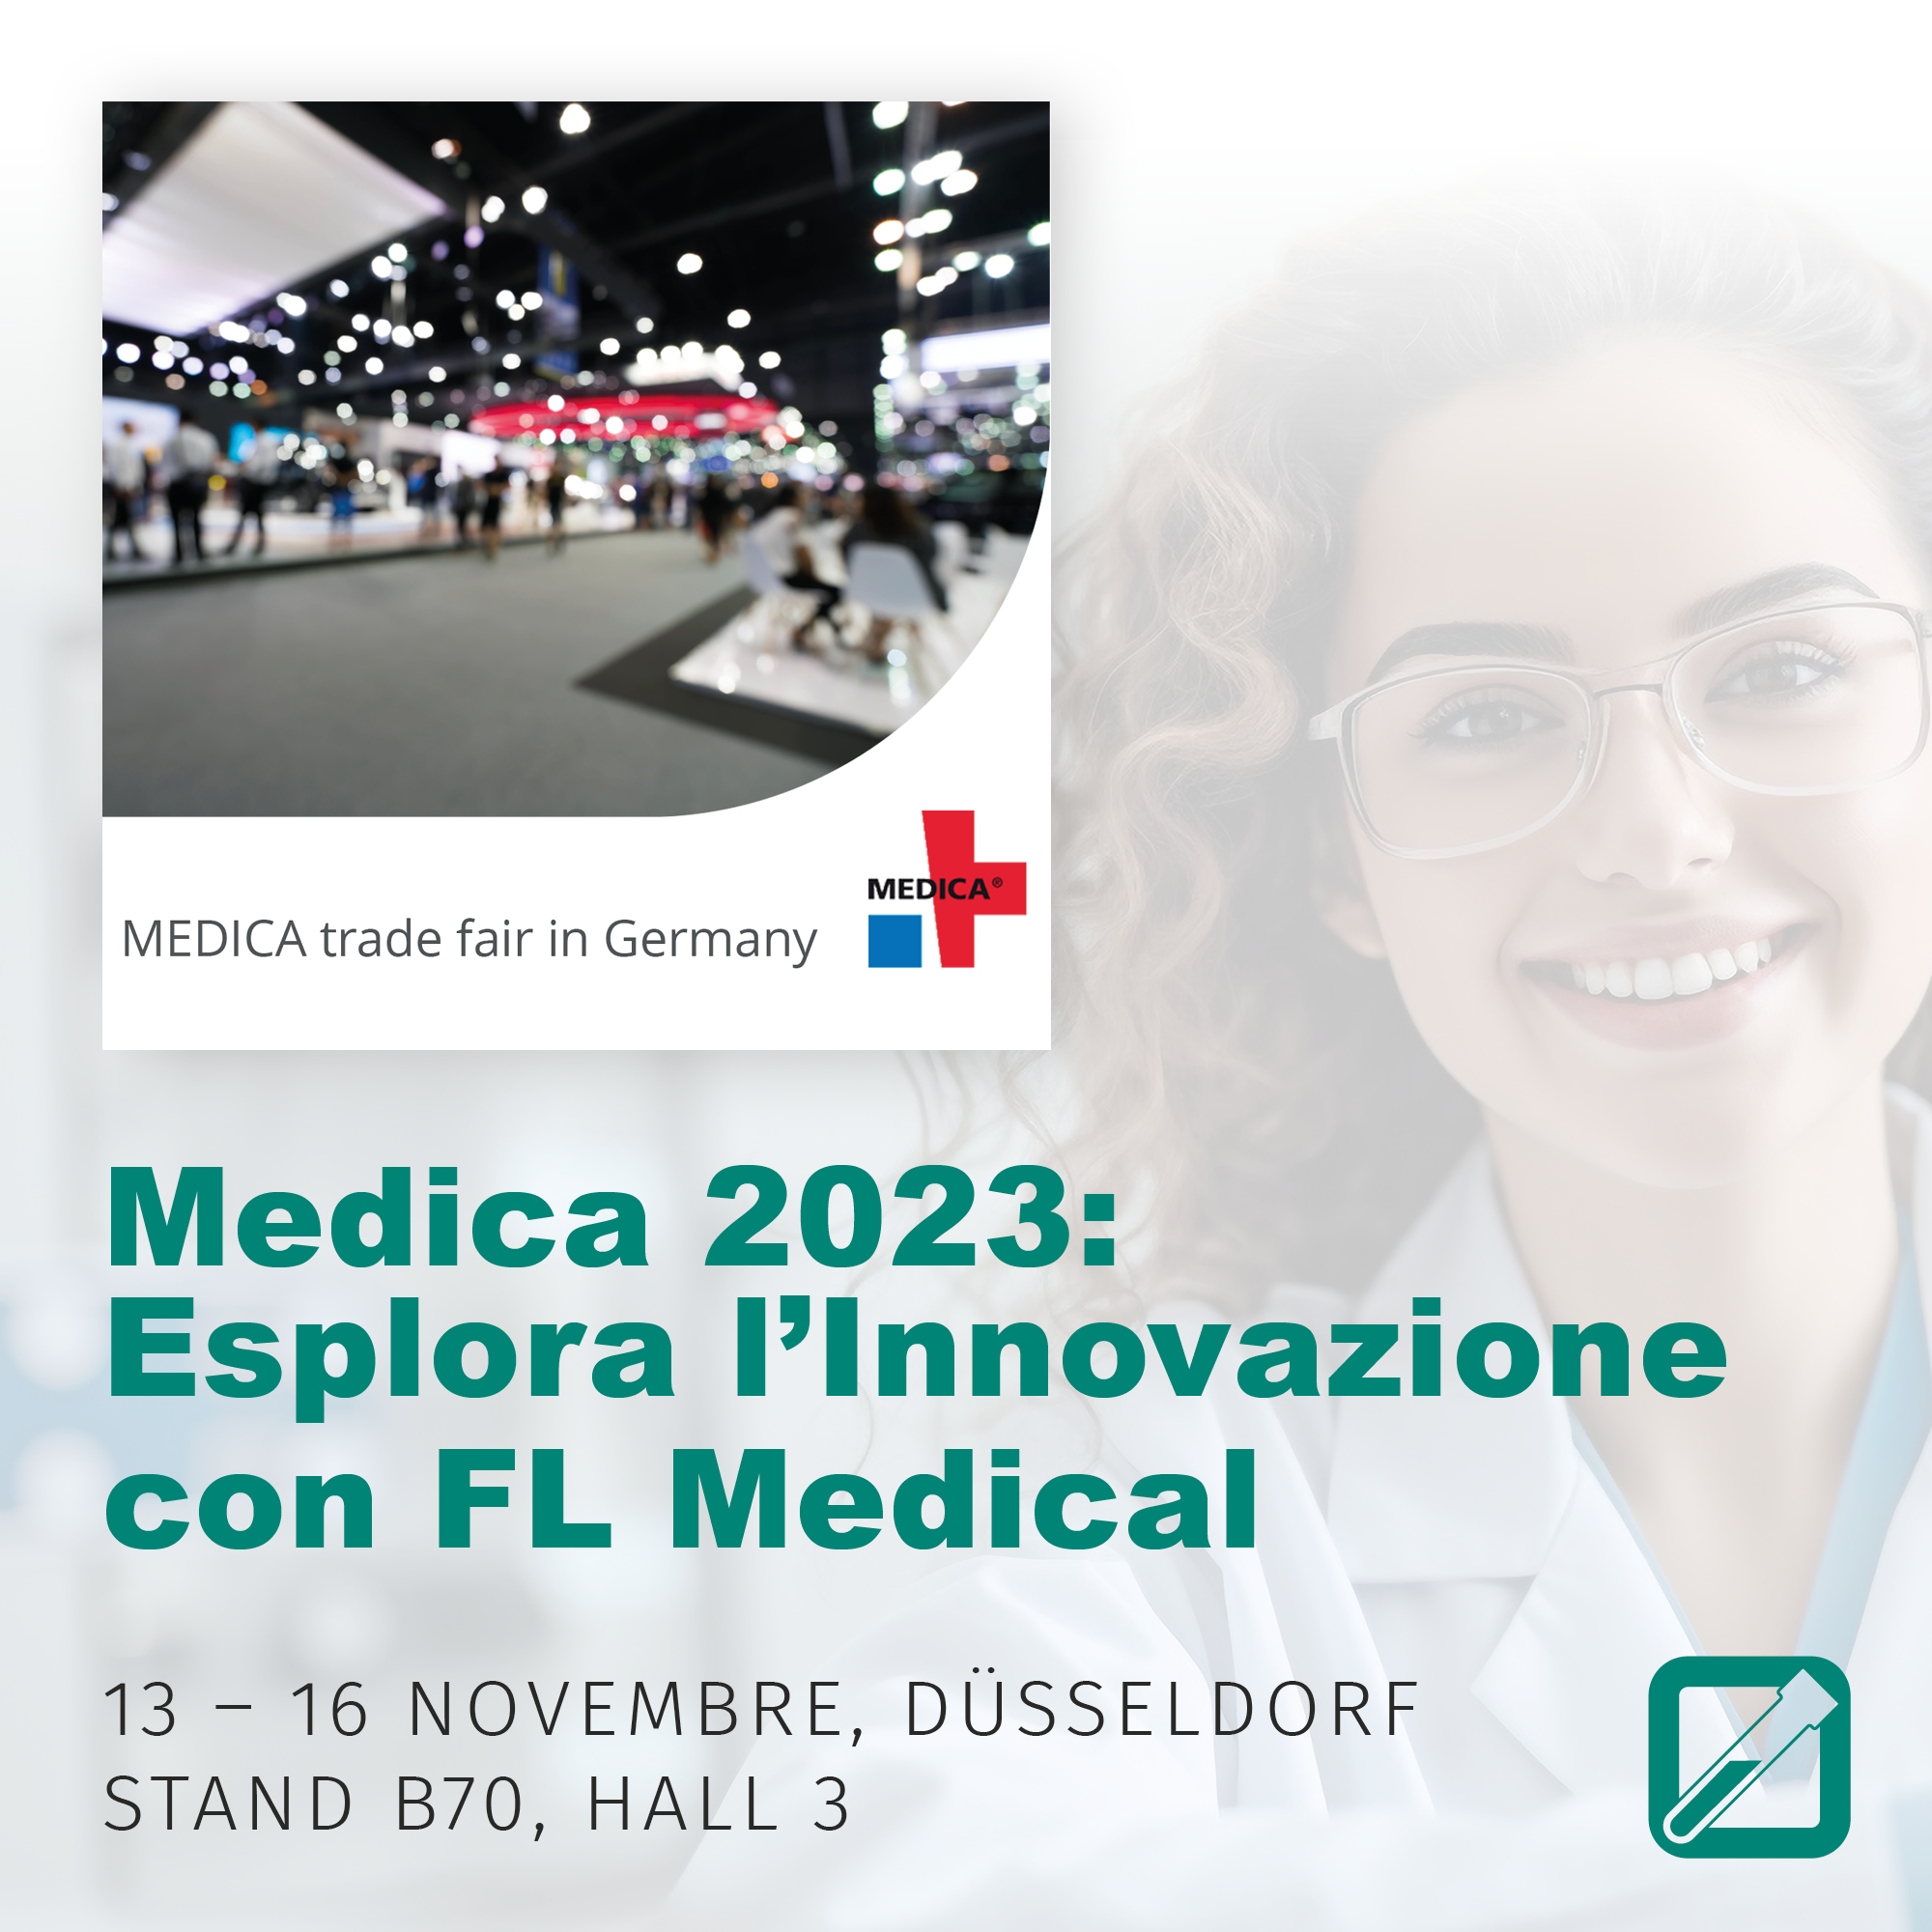 Medica 2023: Esplora l'Innovazione con FL Medical